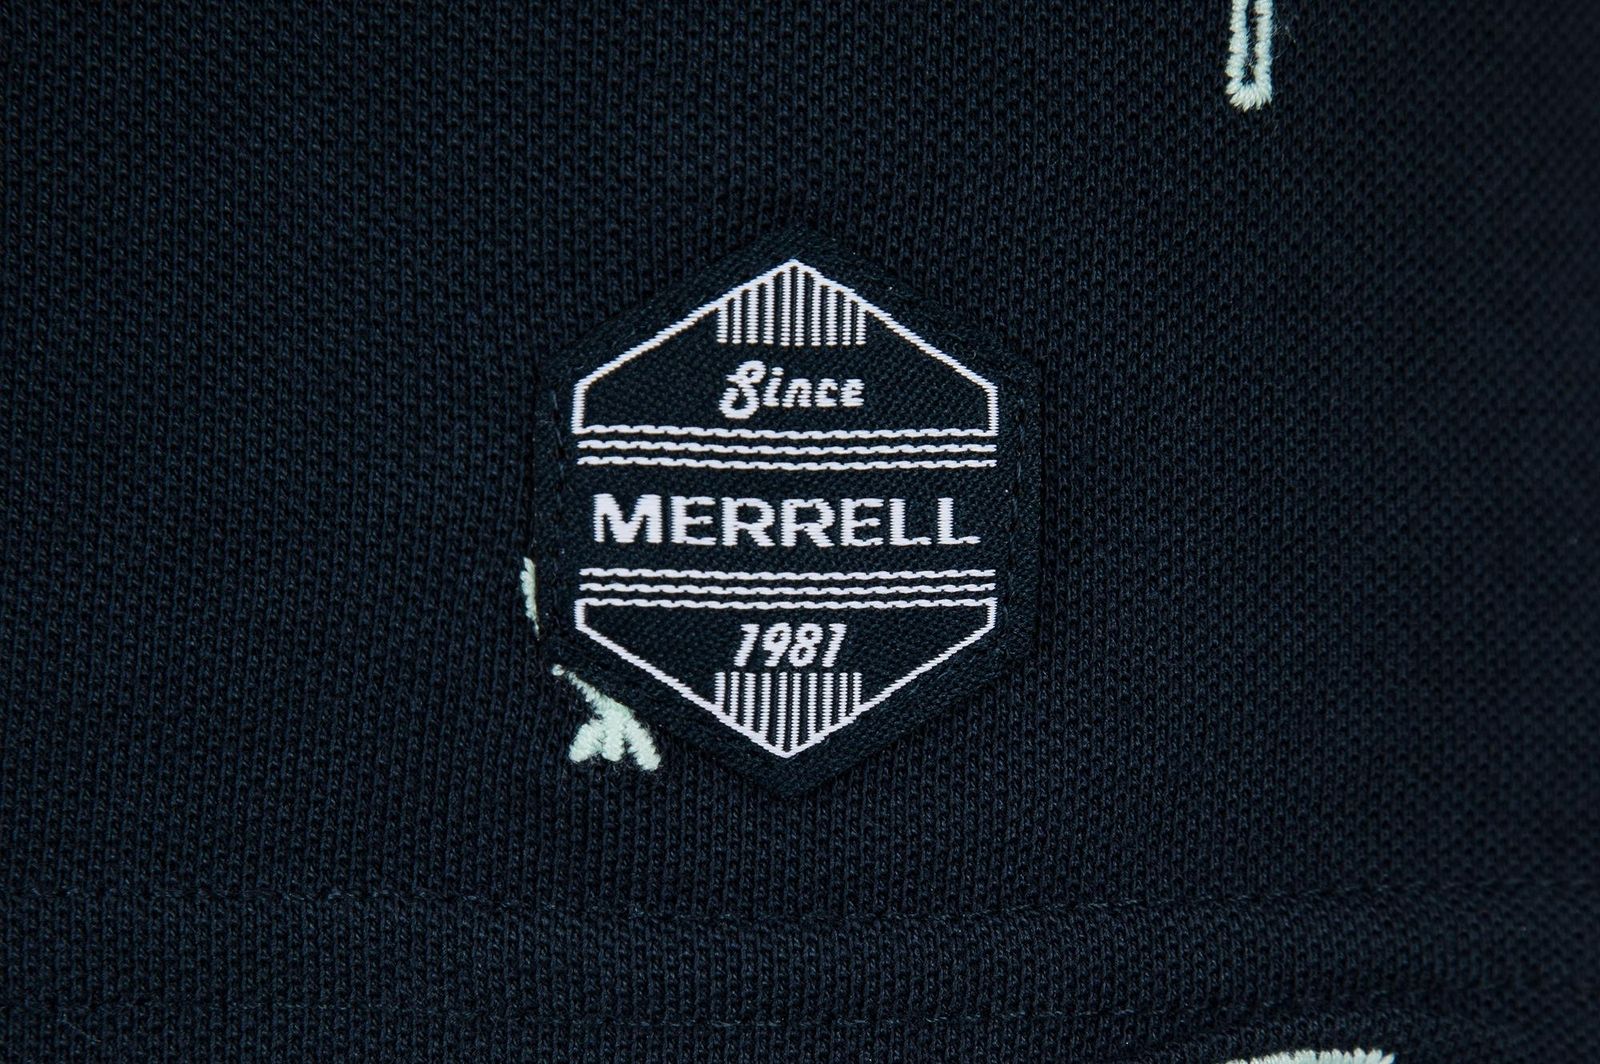   Merrell Men's Polo, : . S19AMRPOM01-M1.  52